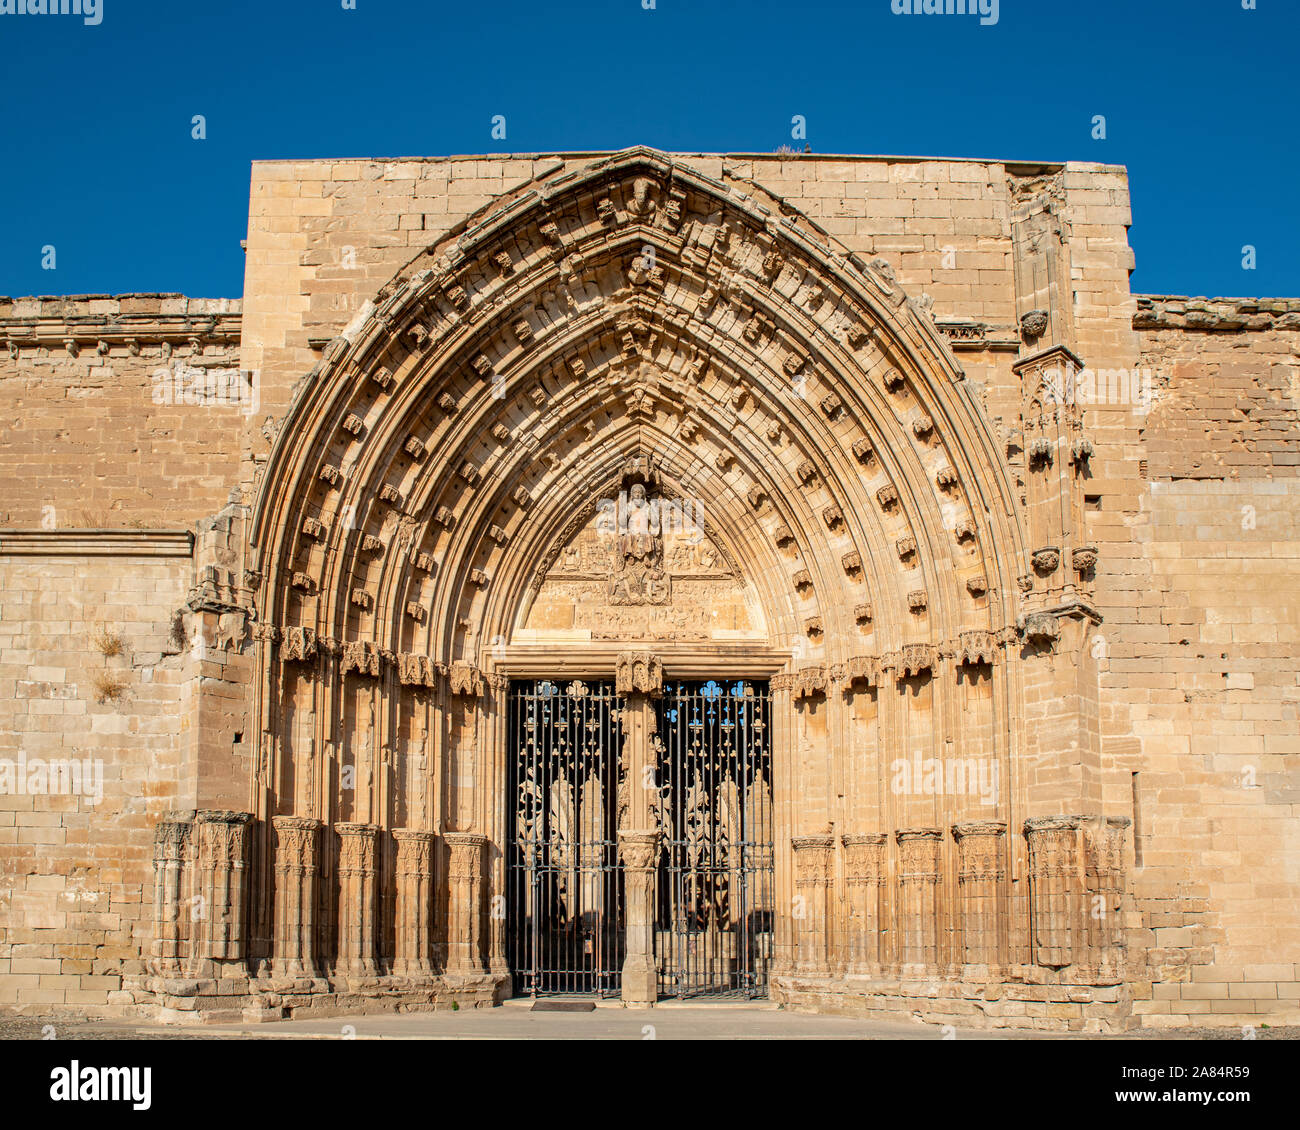 Cattedrale Lerida Vecchia Immagini e Fotos Stock - Alamy